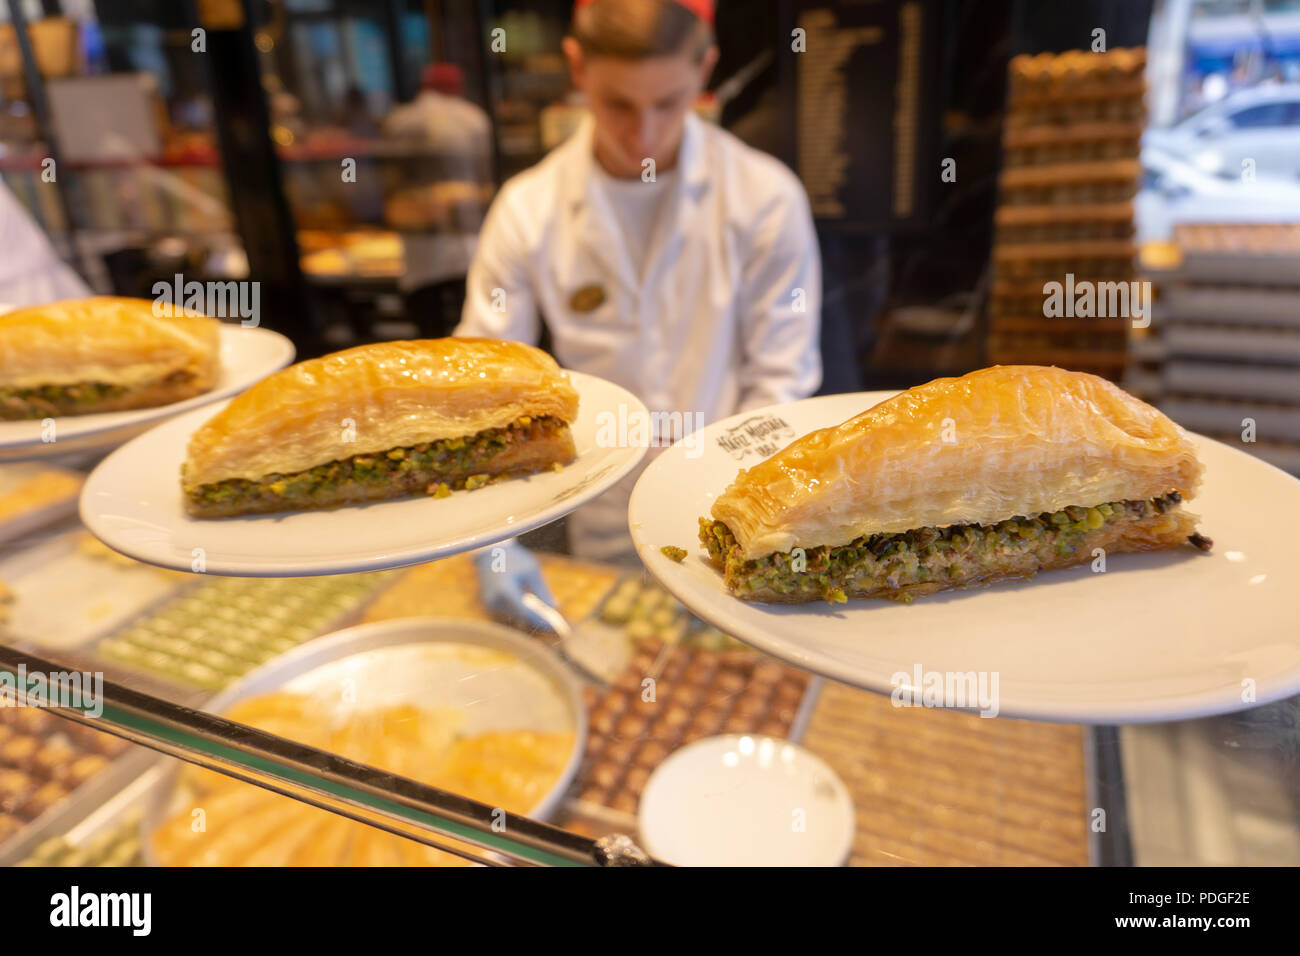 Baklava ist eine regionale Nachtisch gehört nicht nur auf die türkische Kultur, sondern auch fast alle Länder des Nahen und Mittleren Ostens Küchen. Stockfoto